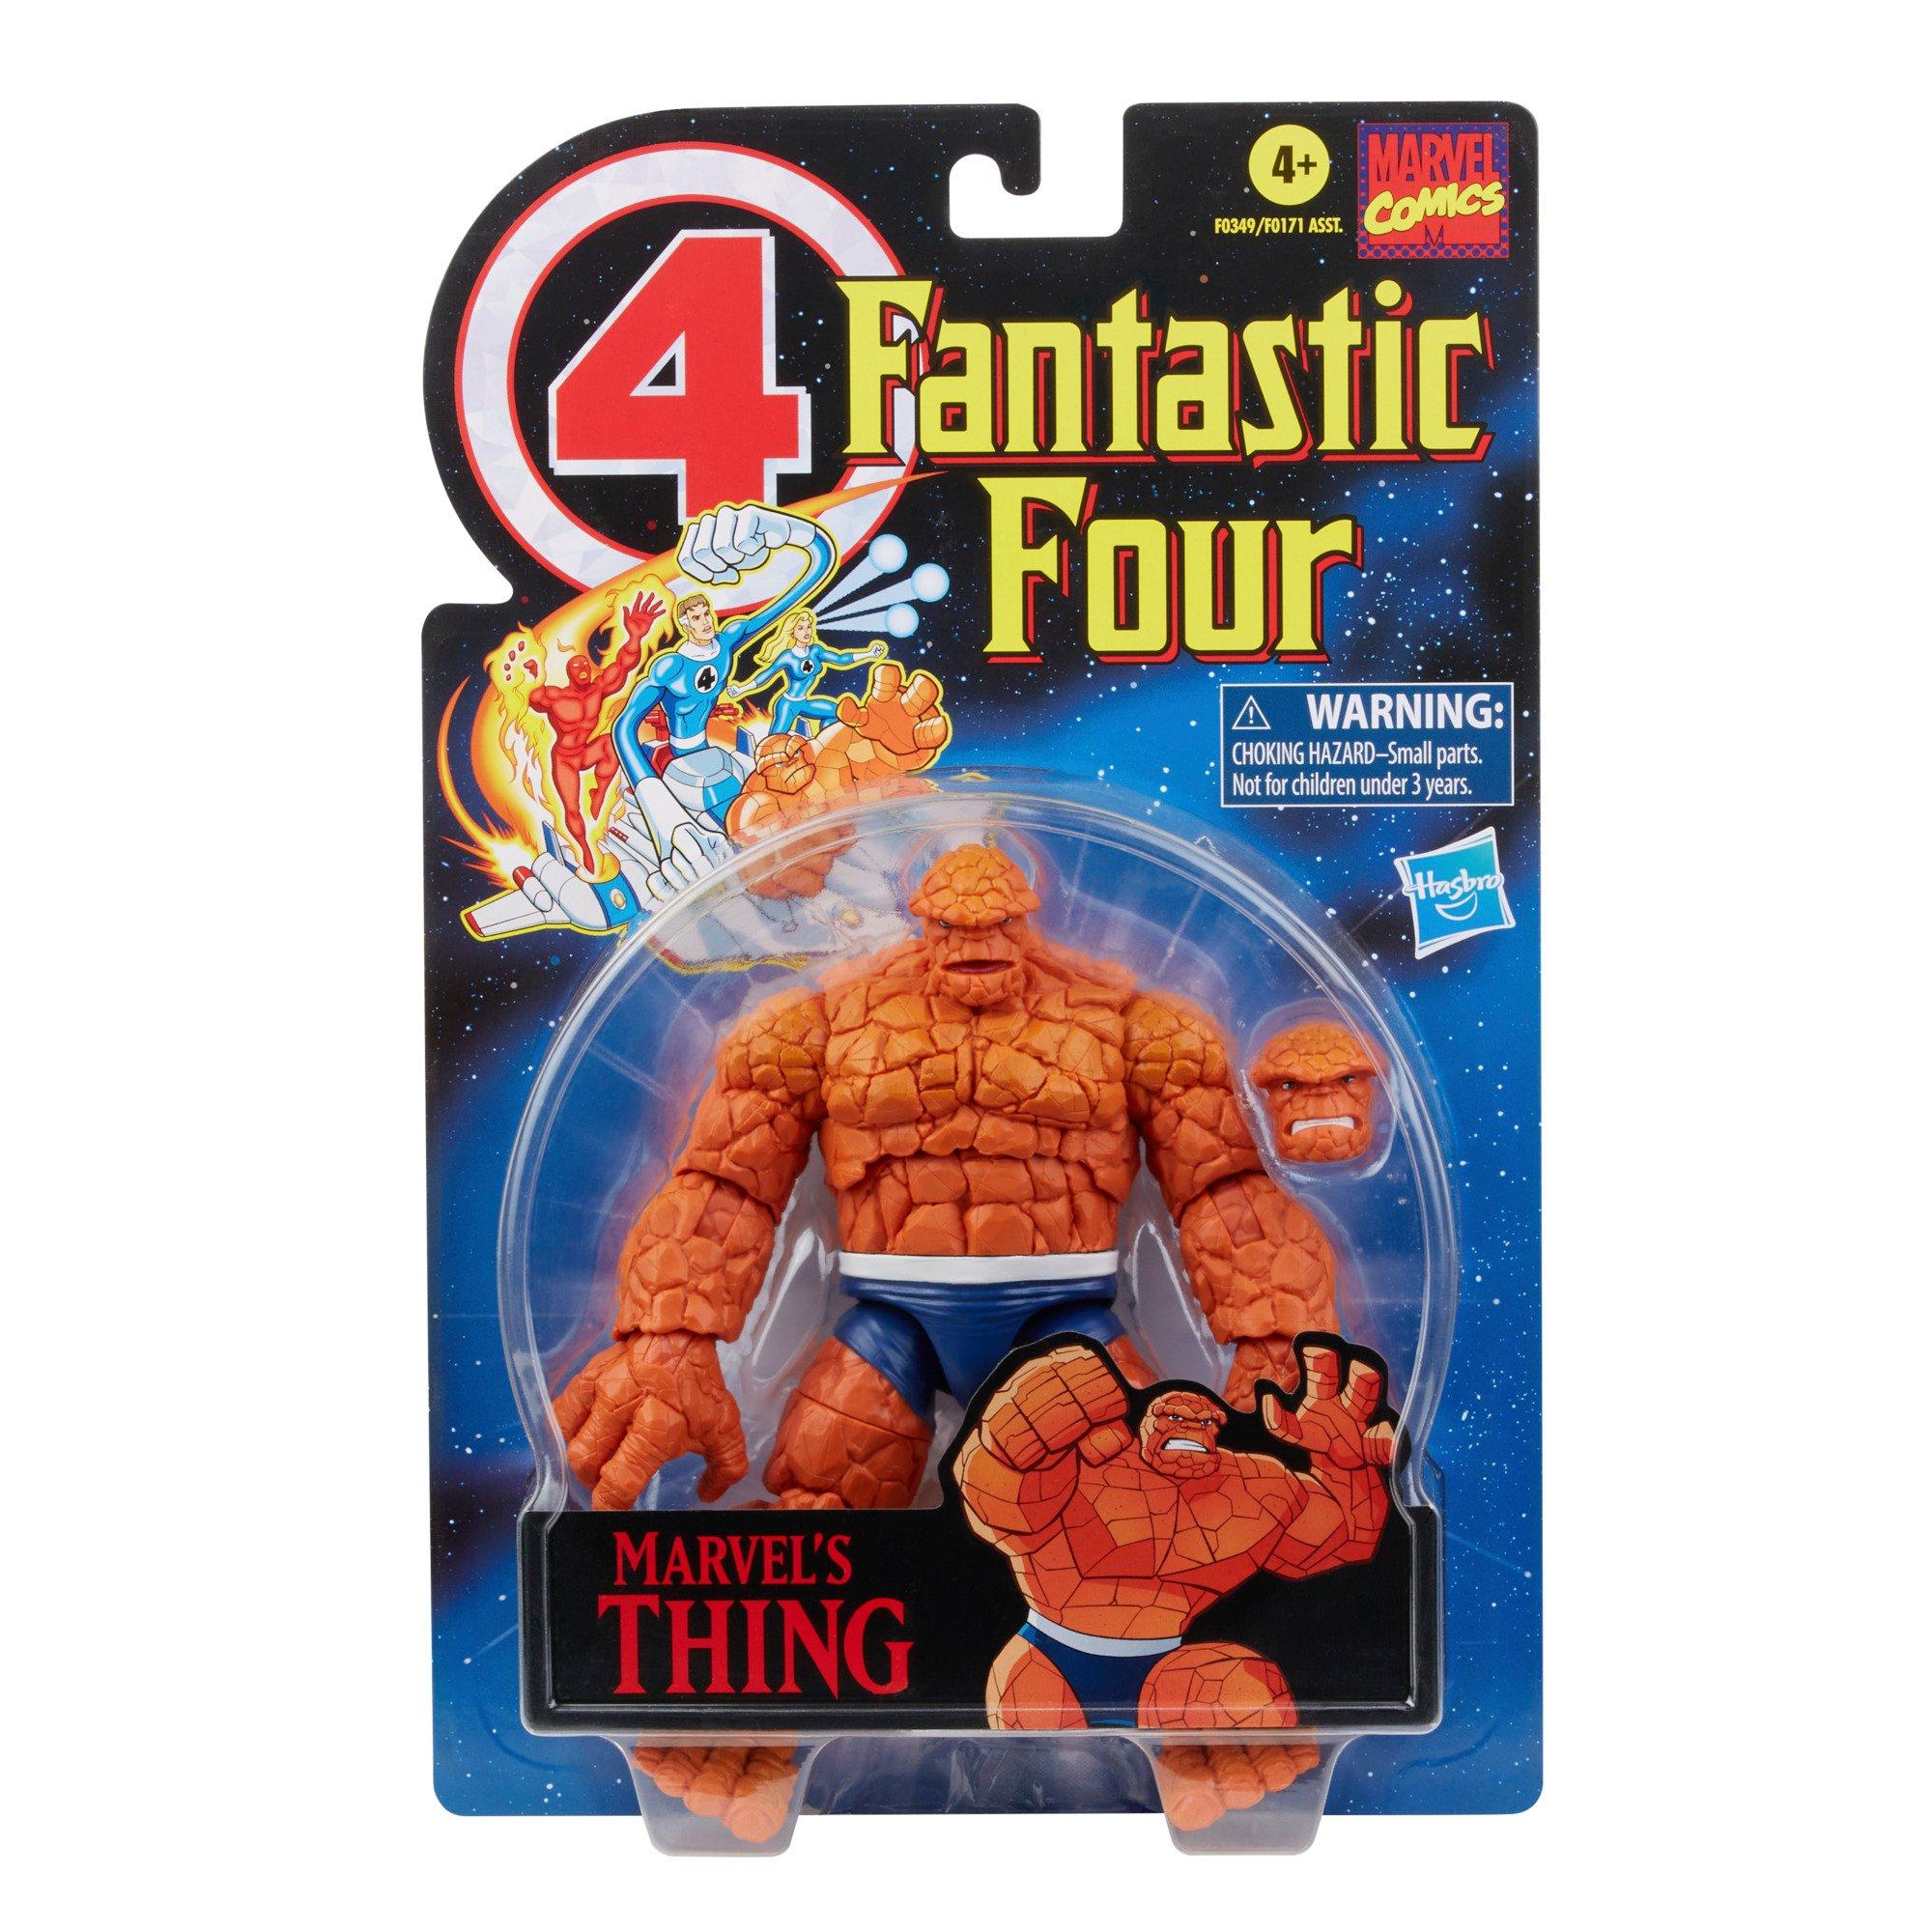 Toy Biz Marvel Comics Fantastic Four Action Figures 